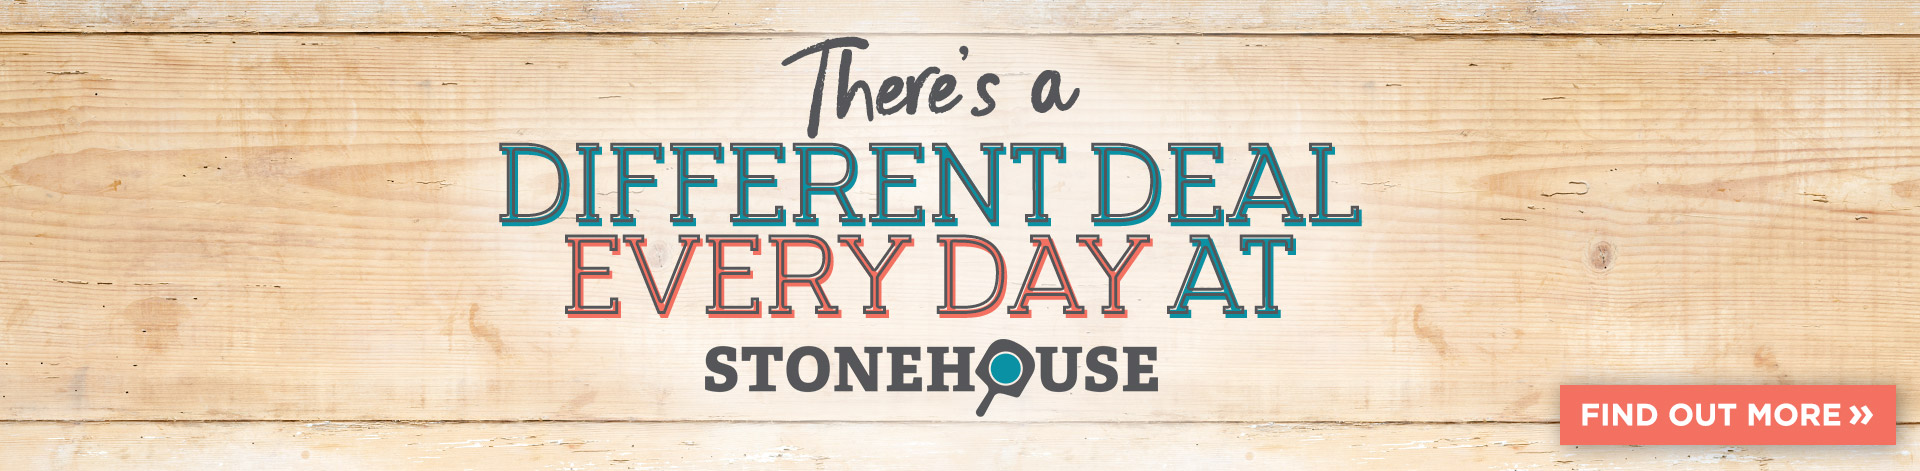 stonehouse-dailydeals-home-banner.jpg